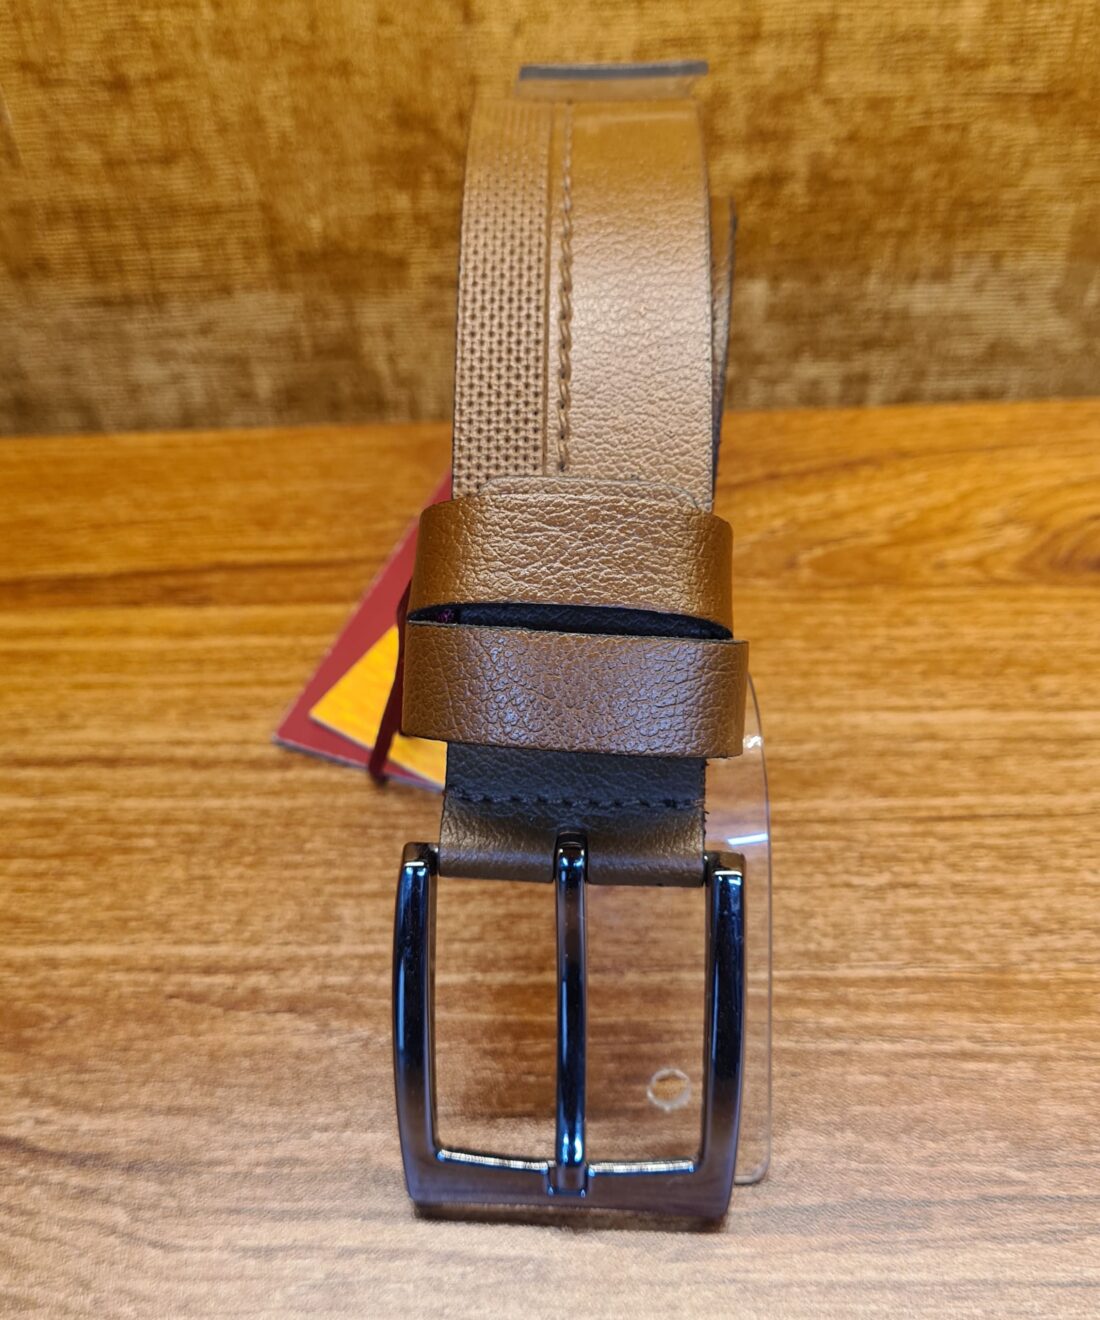 Tan YSK leather belt